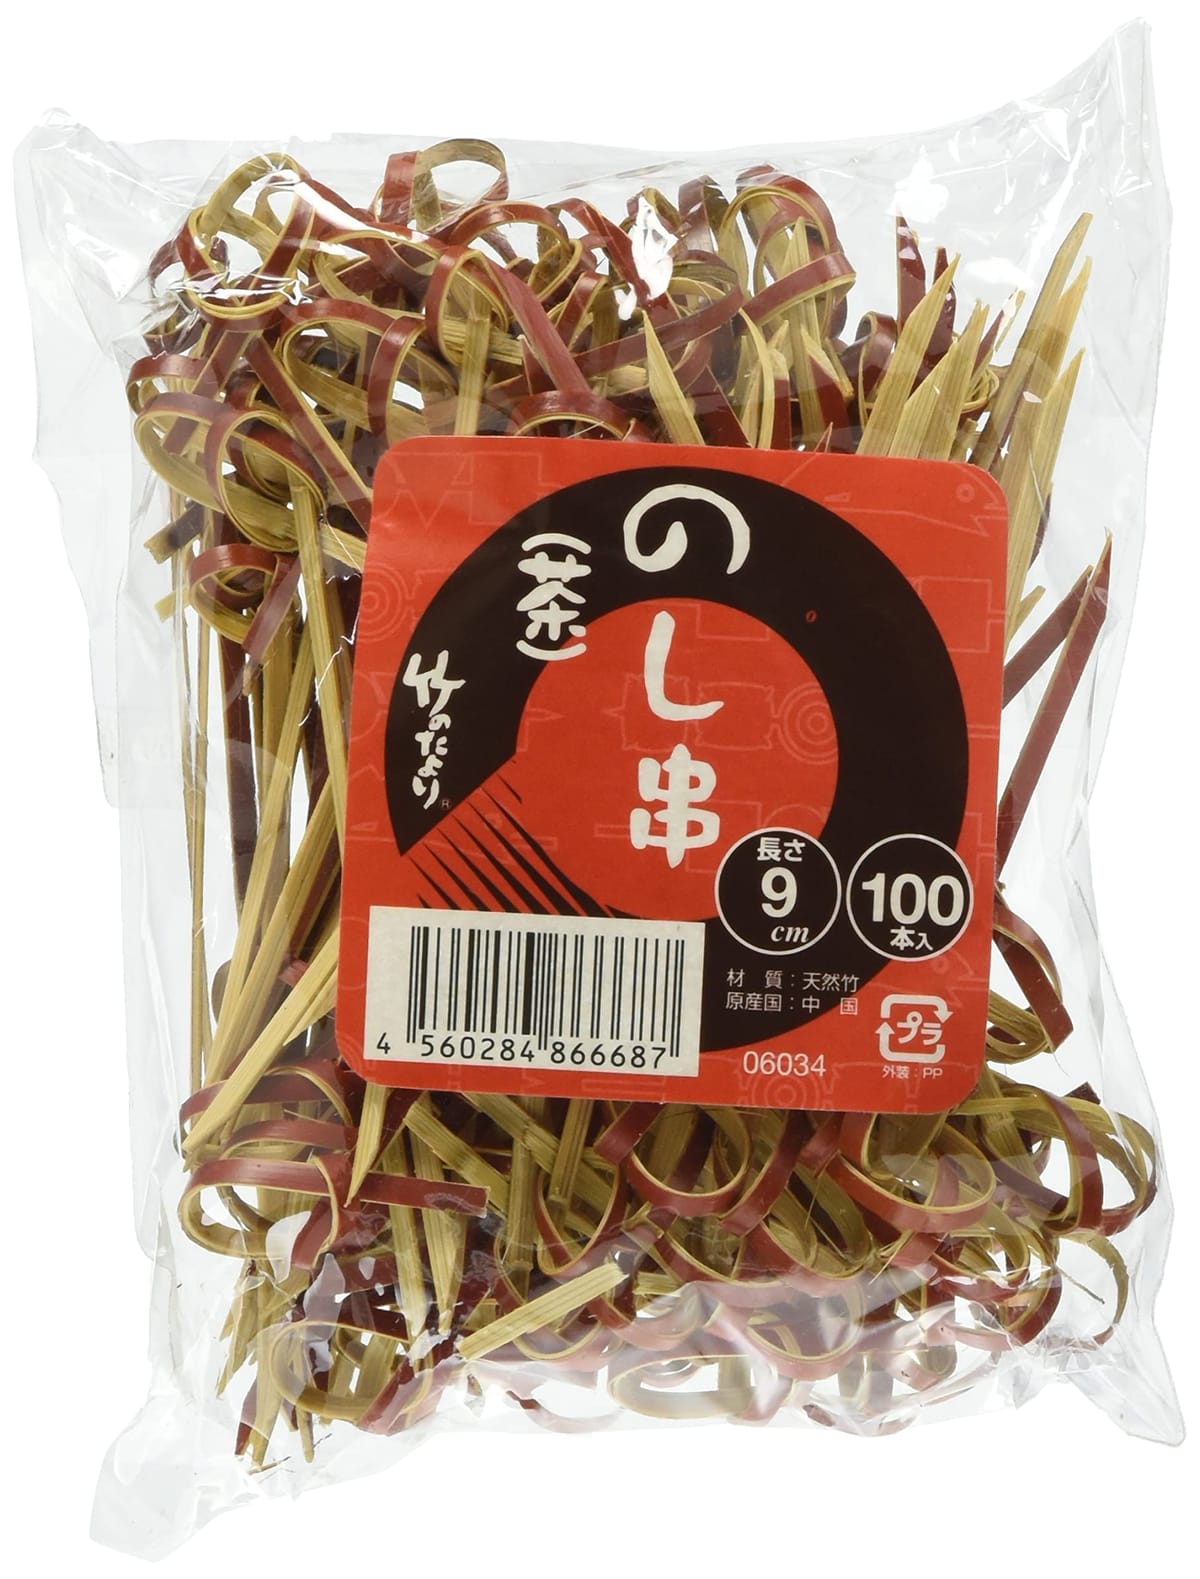 竹のたより 串 のし串(茶) 9cm 100本 6034